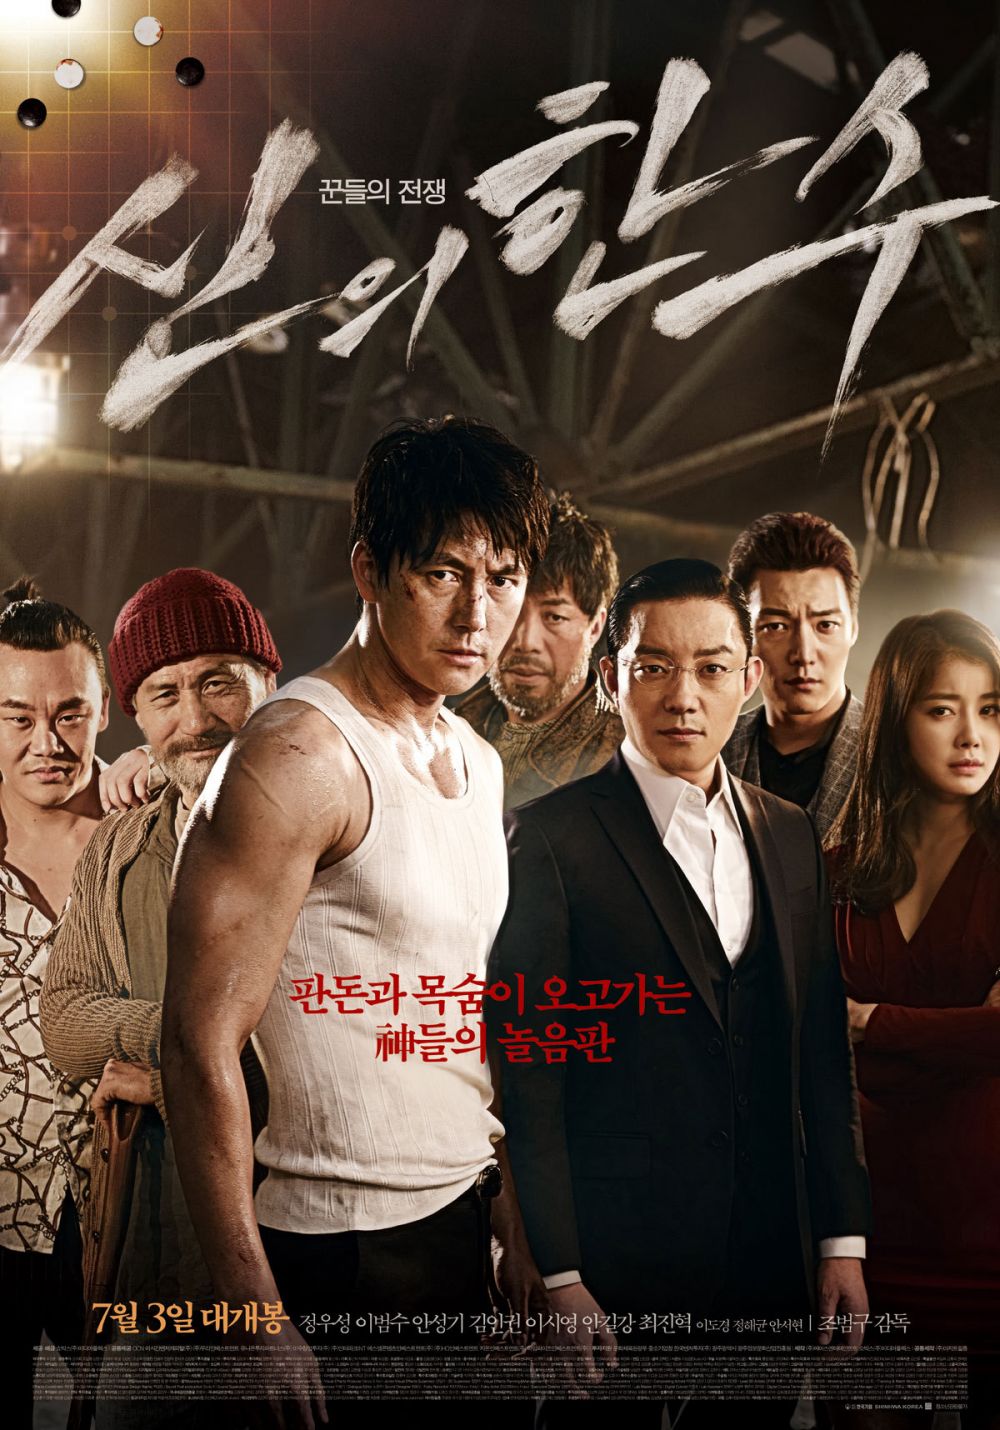 7 Film Korea Menegangkan yang Gak Boleh Dilewatkan, Seru Abis!